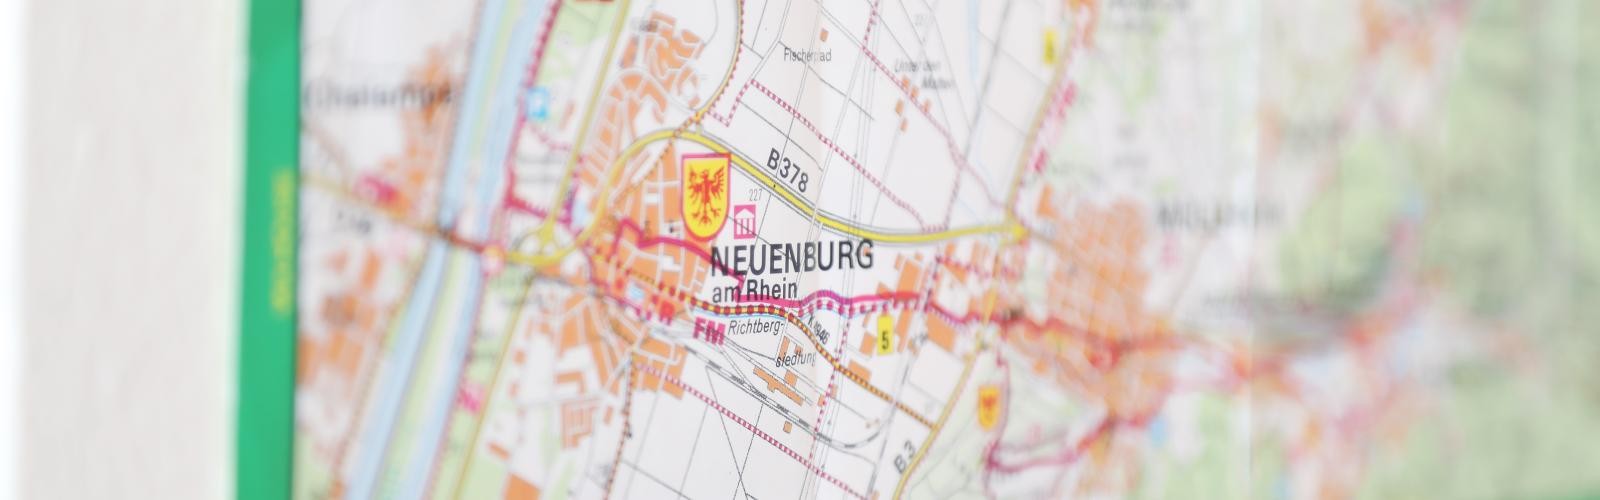 Karte des Zähringer-Wanderwegs in Neuenburg